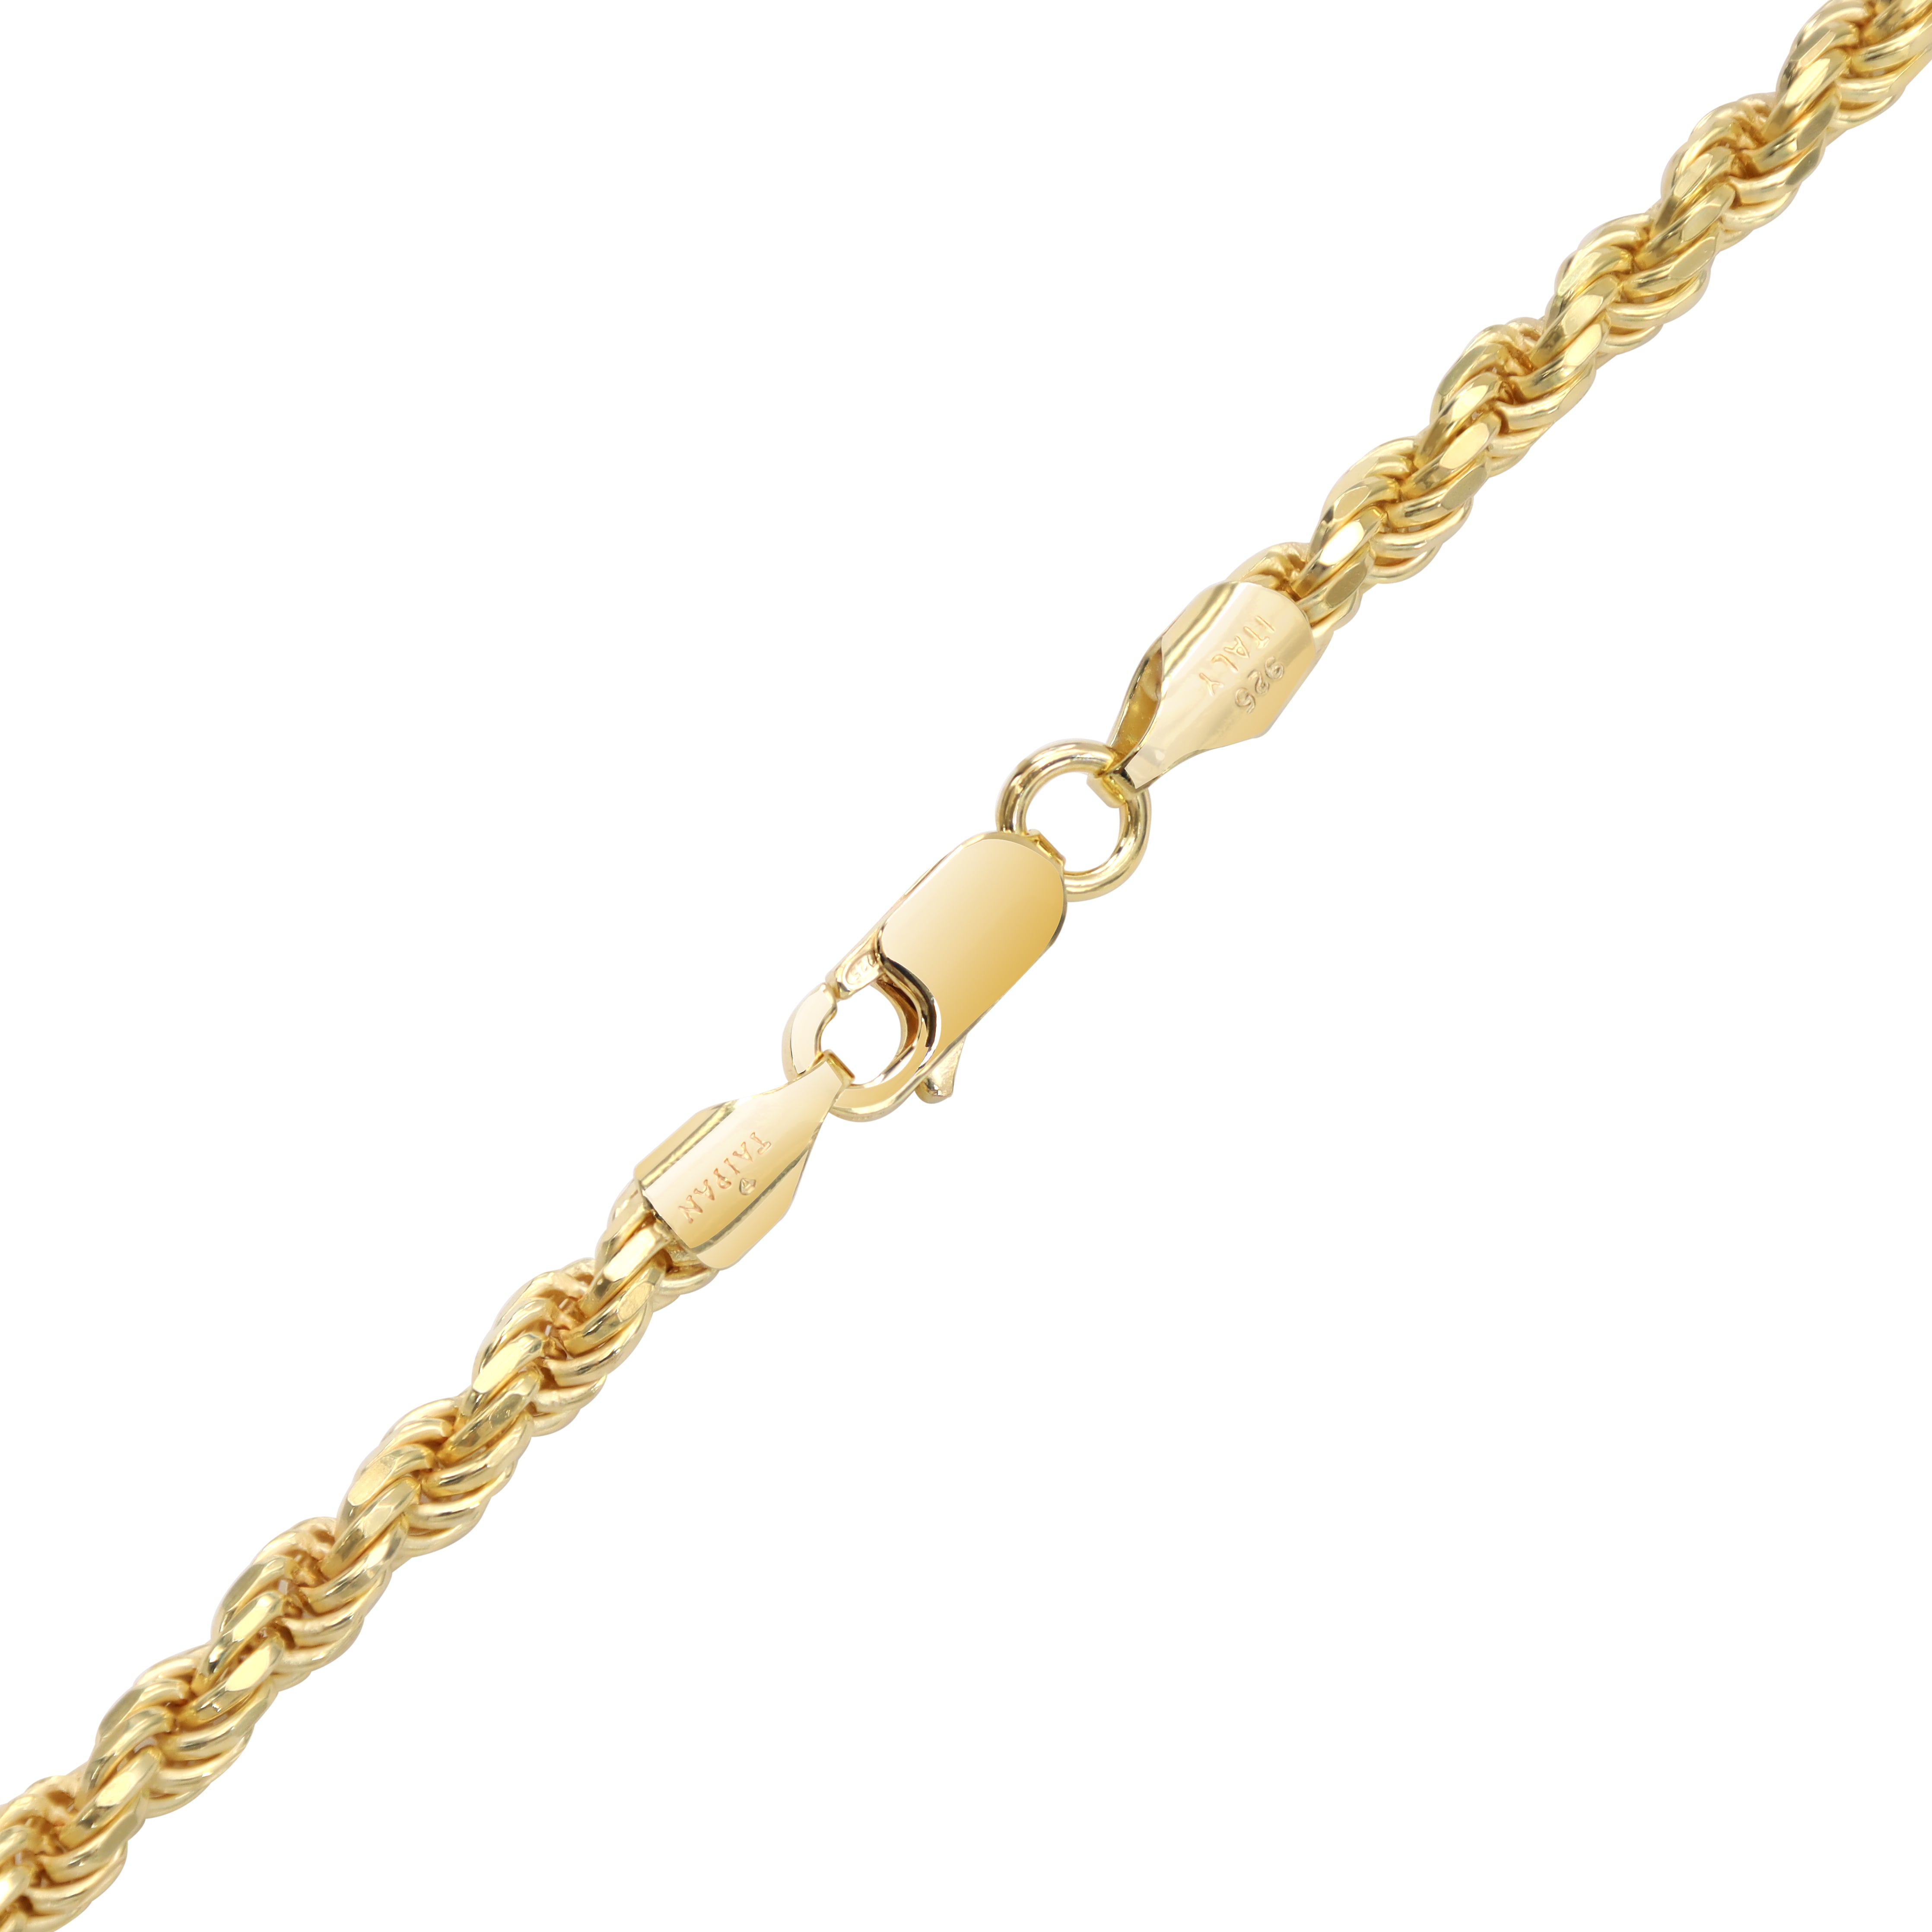 Vergoldete Rope Chain Kordelkette 4mm breit 55cm lang aus 925 Sterlingsilber (K688) - Taipan Schmuck